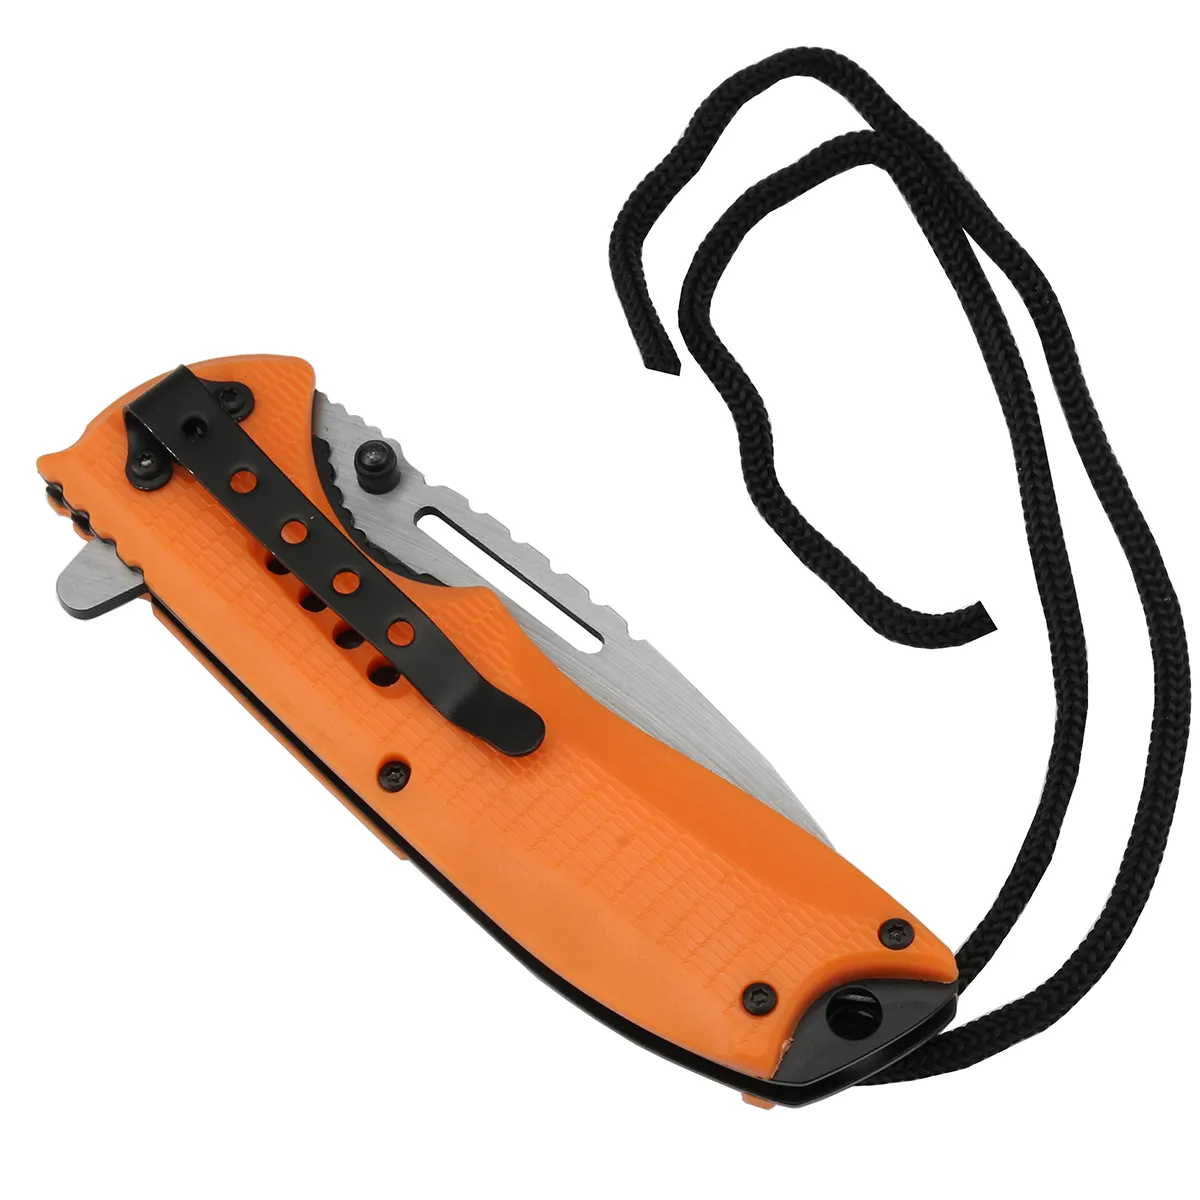 سكين جيب PK-1148 يُمكن طيه لرحلات التخييم من مصنع Orange بمعدات للبيع، سكين مناسب للاستعمال الخارجي